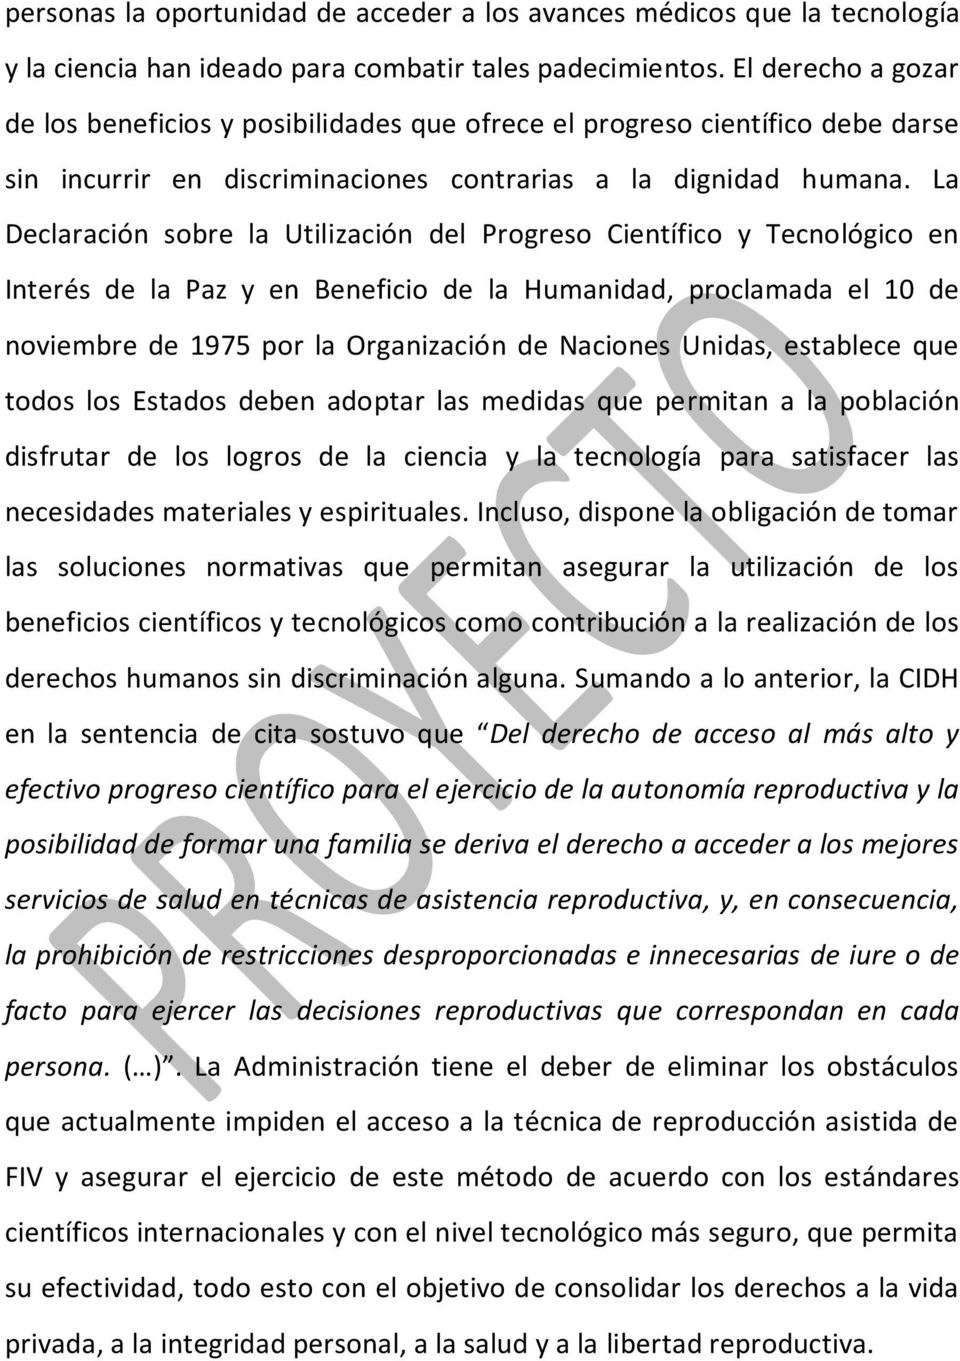 La Declaración sobre la Utilización del Progreso Científico y Tecnológico en Interés de la Paz y en Beneficio de la Humanidad, proclamada el 10 de noviembre de 1975 por la Organización de Naciones